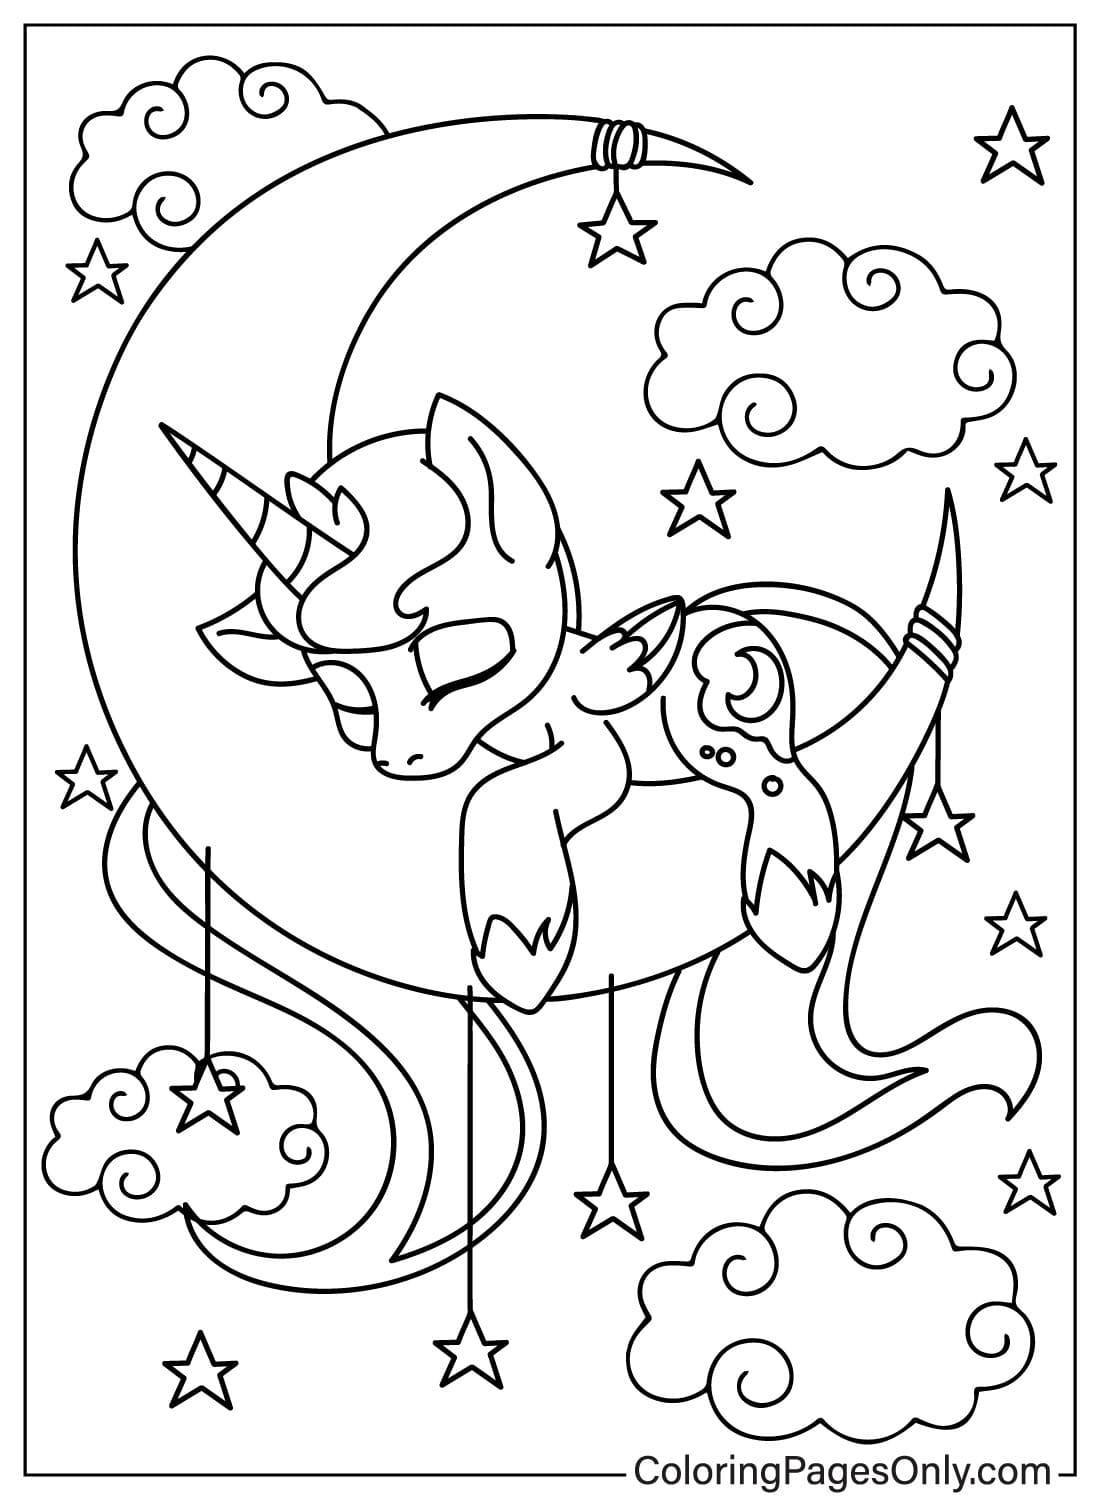 Princesa Luna duerme en la luna Página para colorear de Princesa Luna